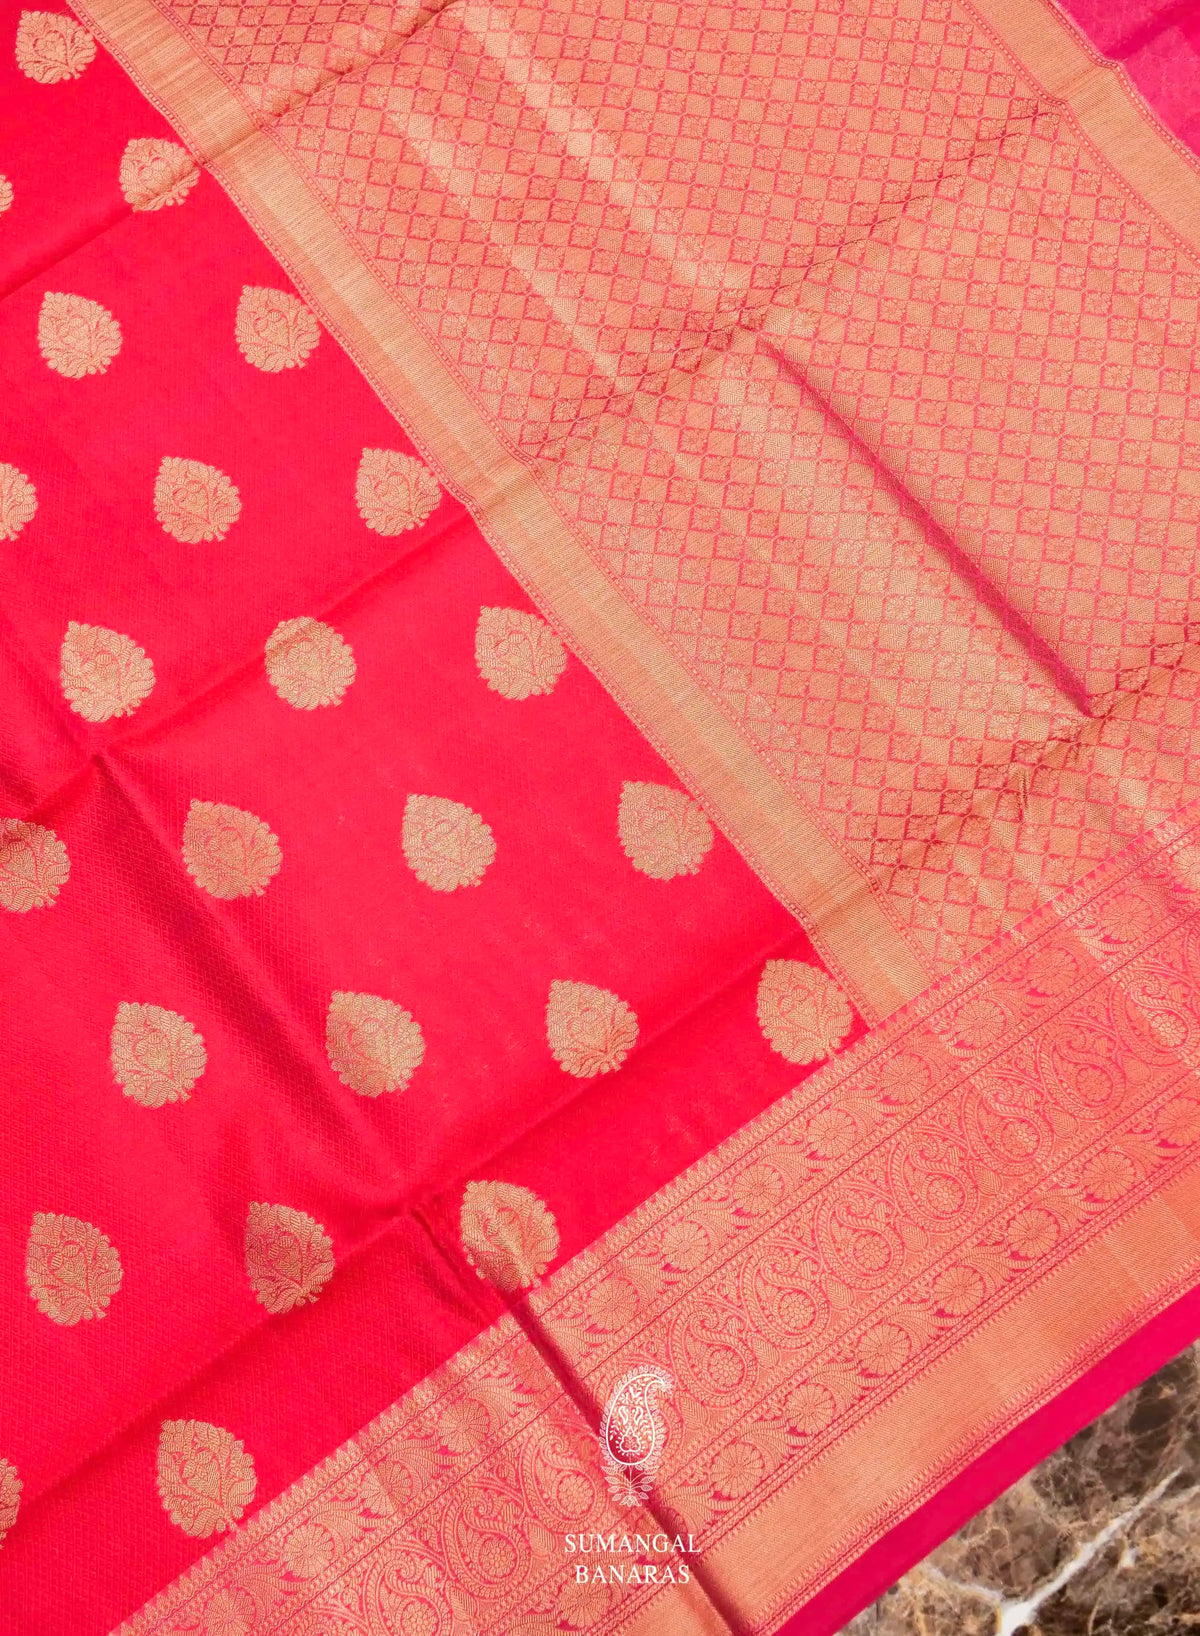 Banarasi Red Blended Tanchoi Silk Saree